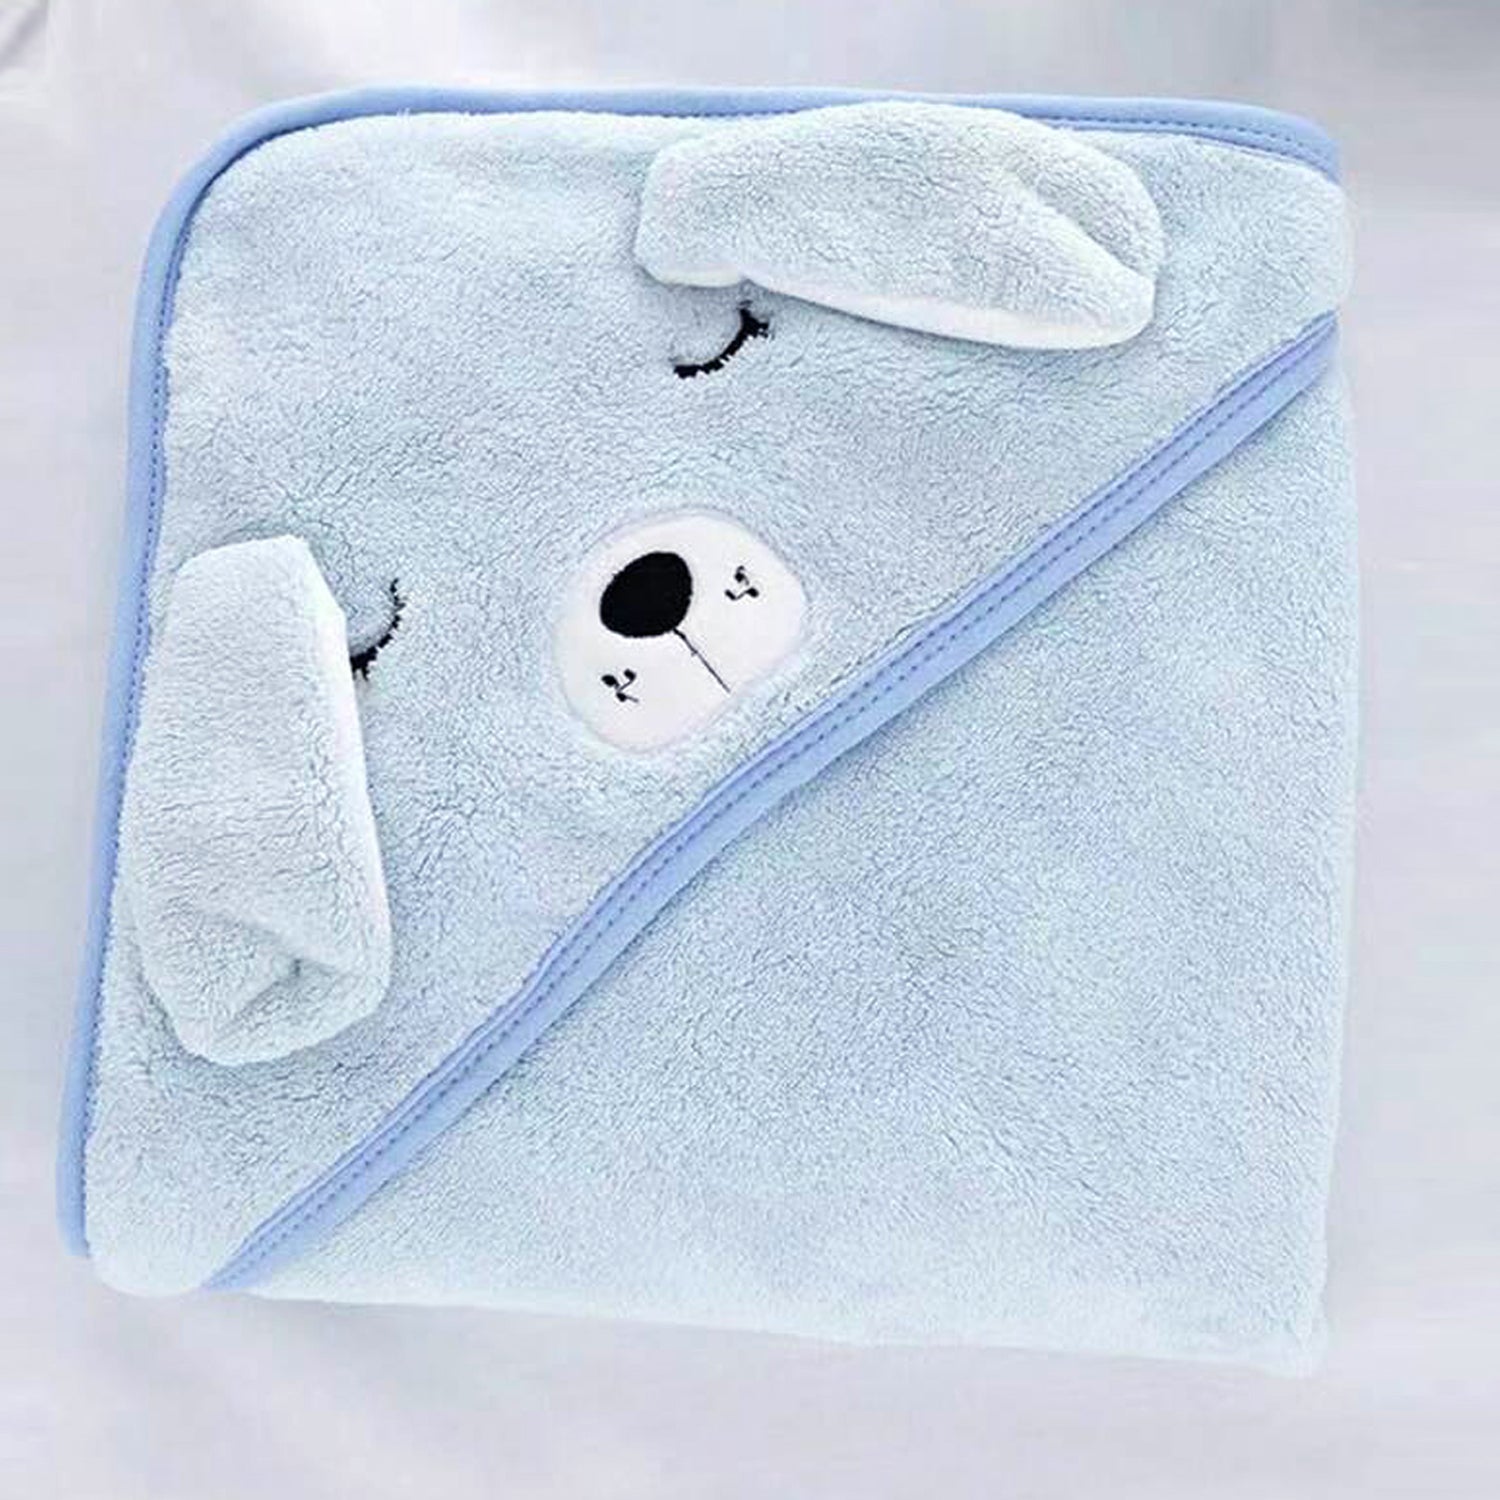 Designer Hooded Bath Towel |Blue|